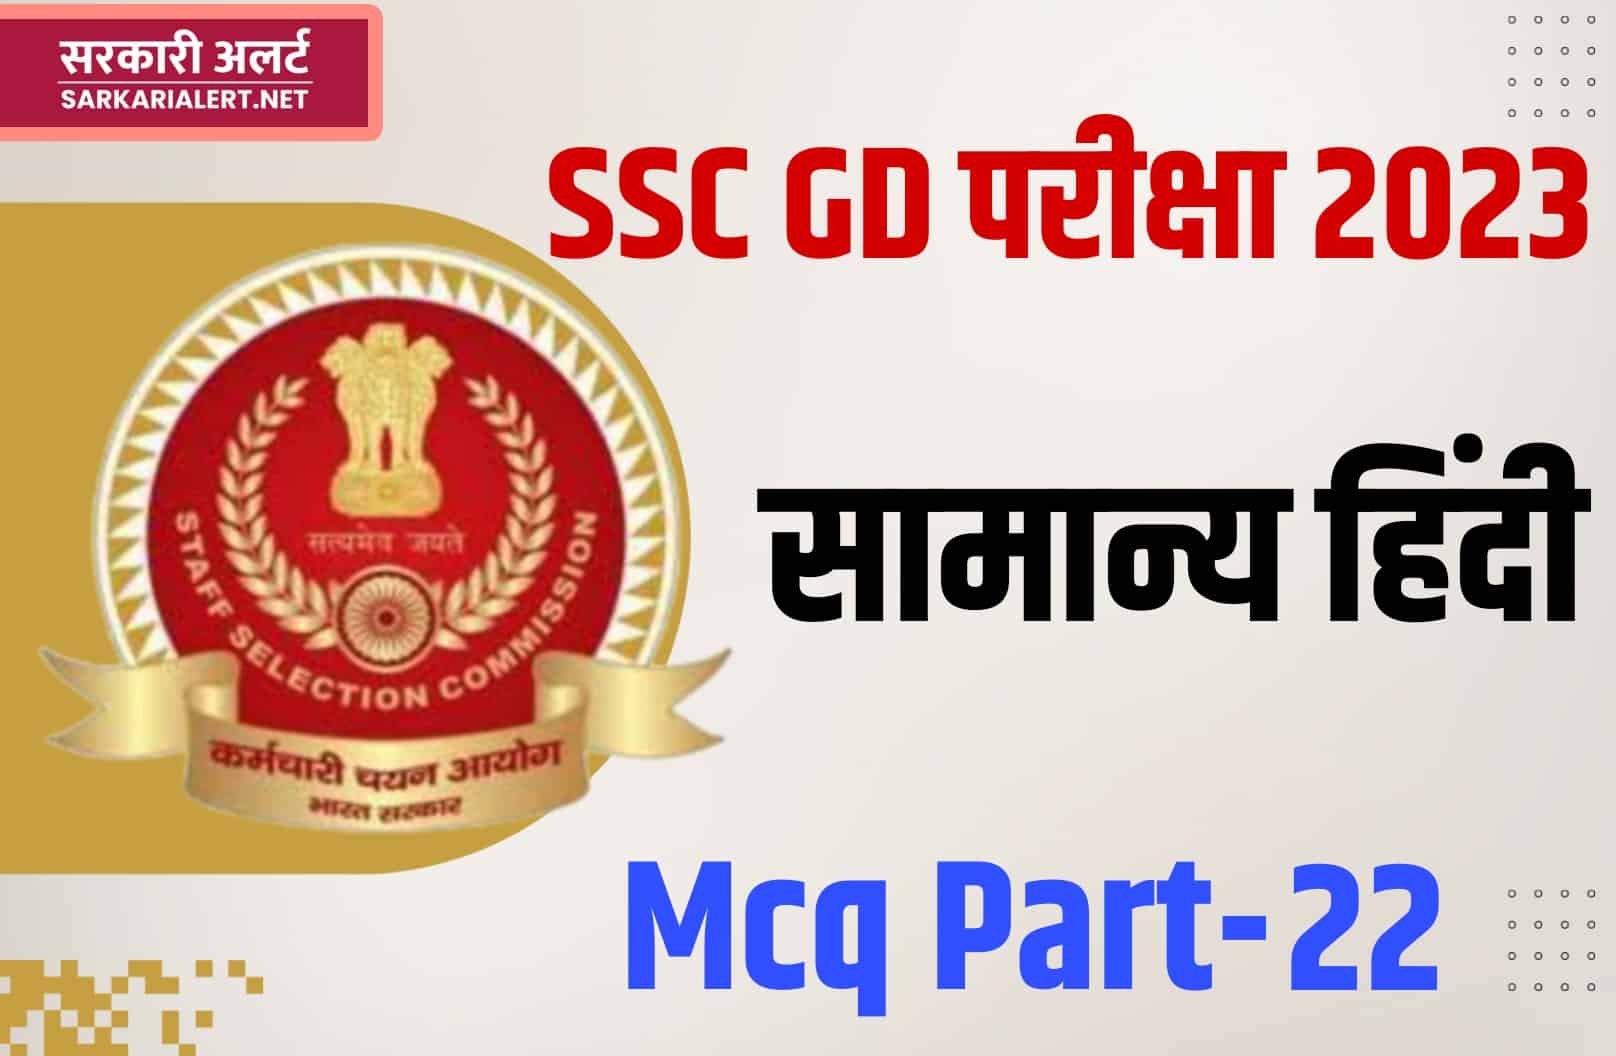 SSC GD Exam 2023 Hindi MCQ – 22 | सामान्य हिंदी के महत्वपूर्ण प्रश्न और उत्तर